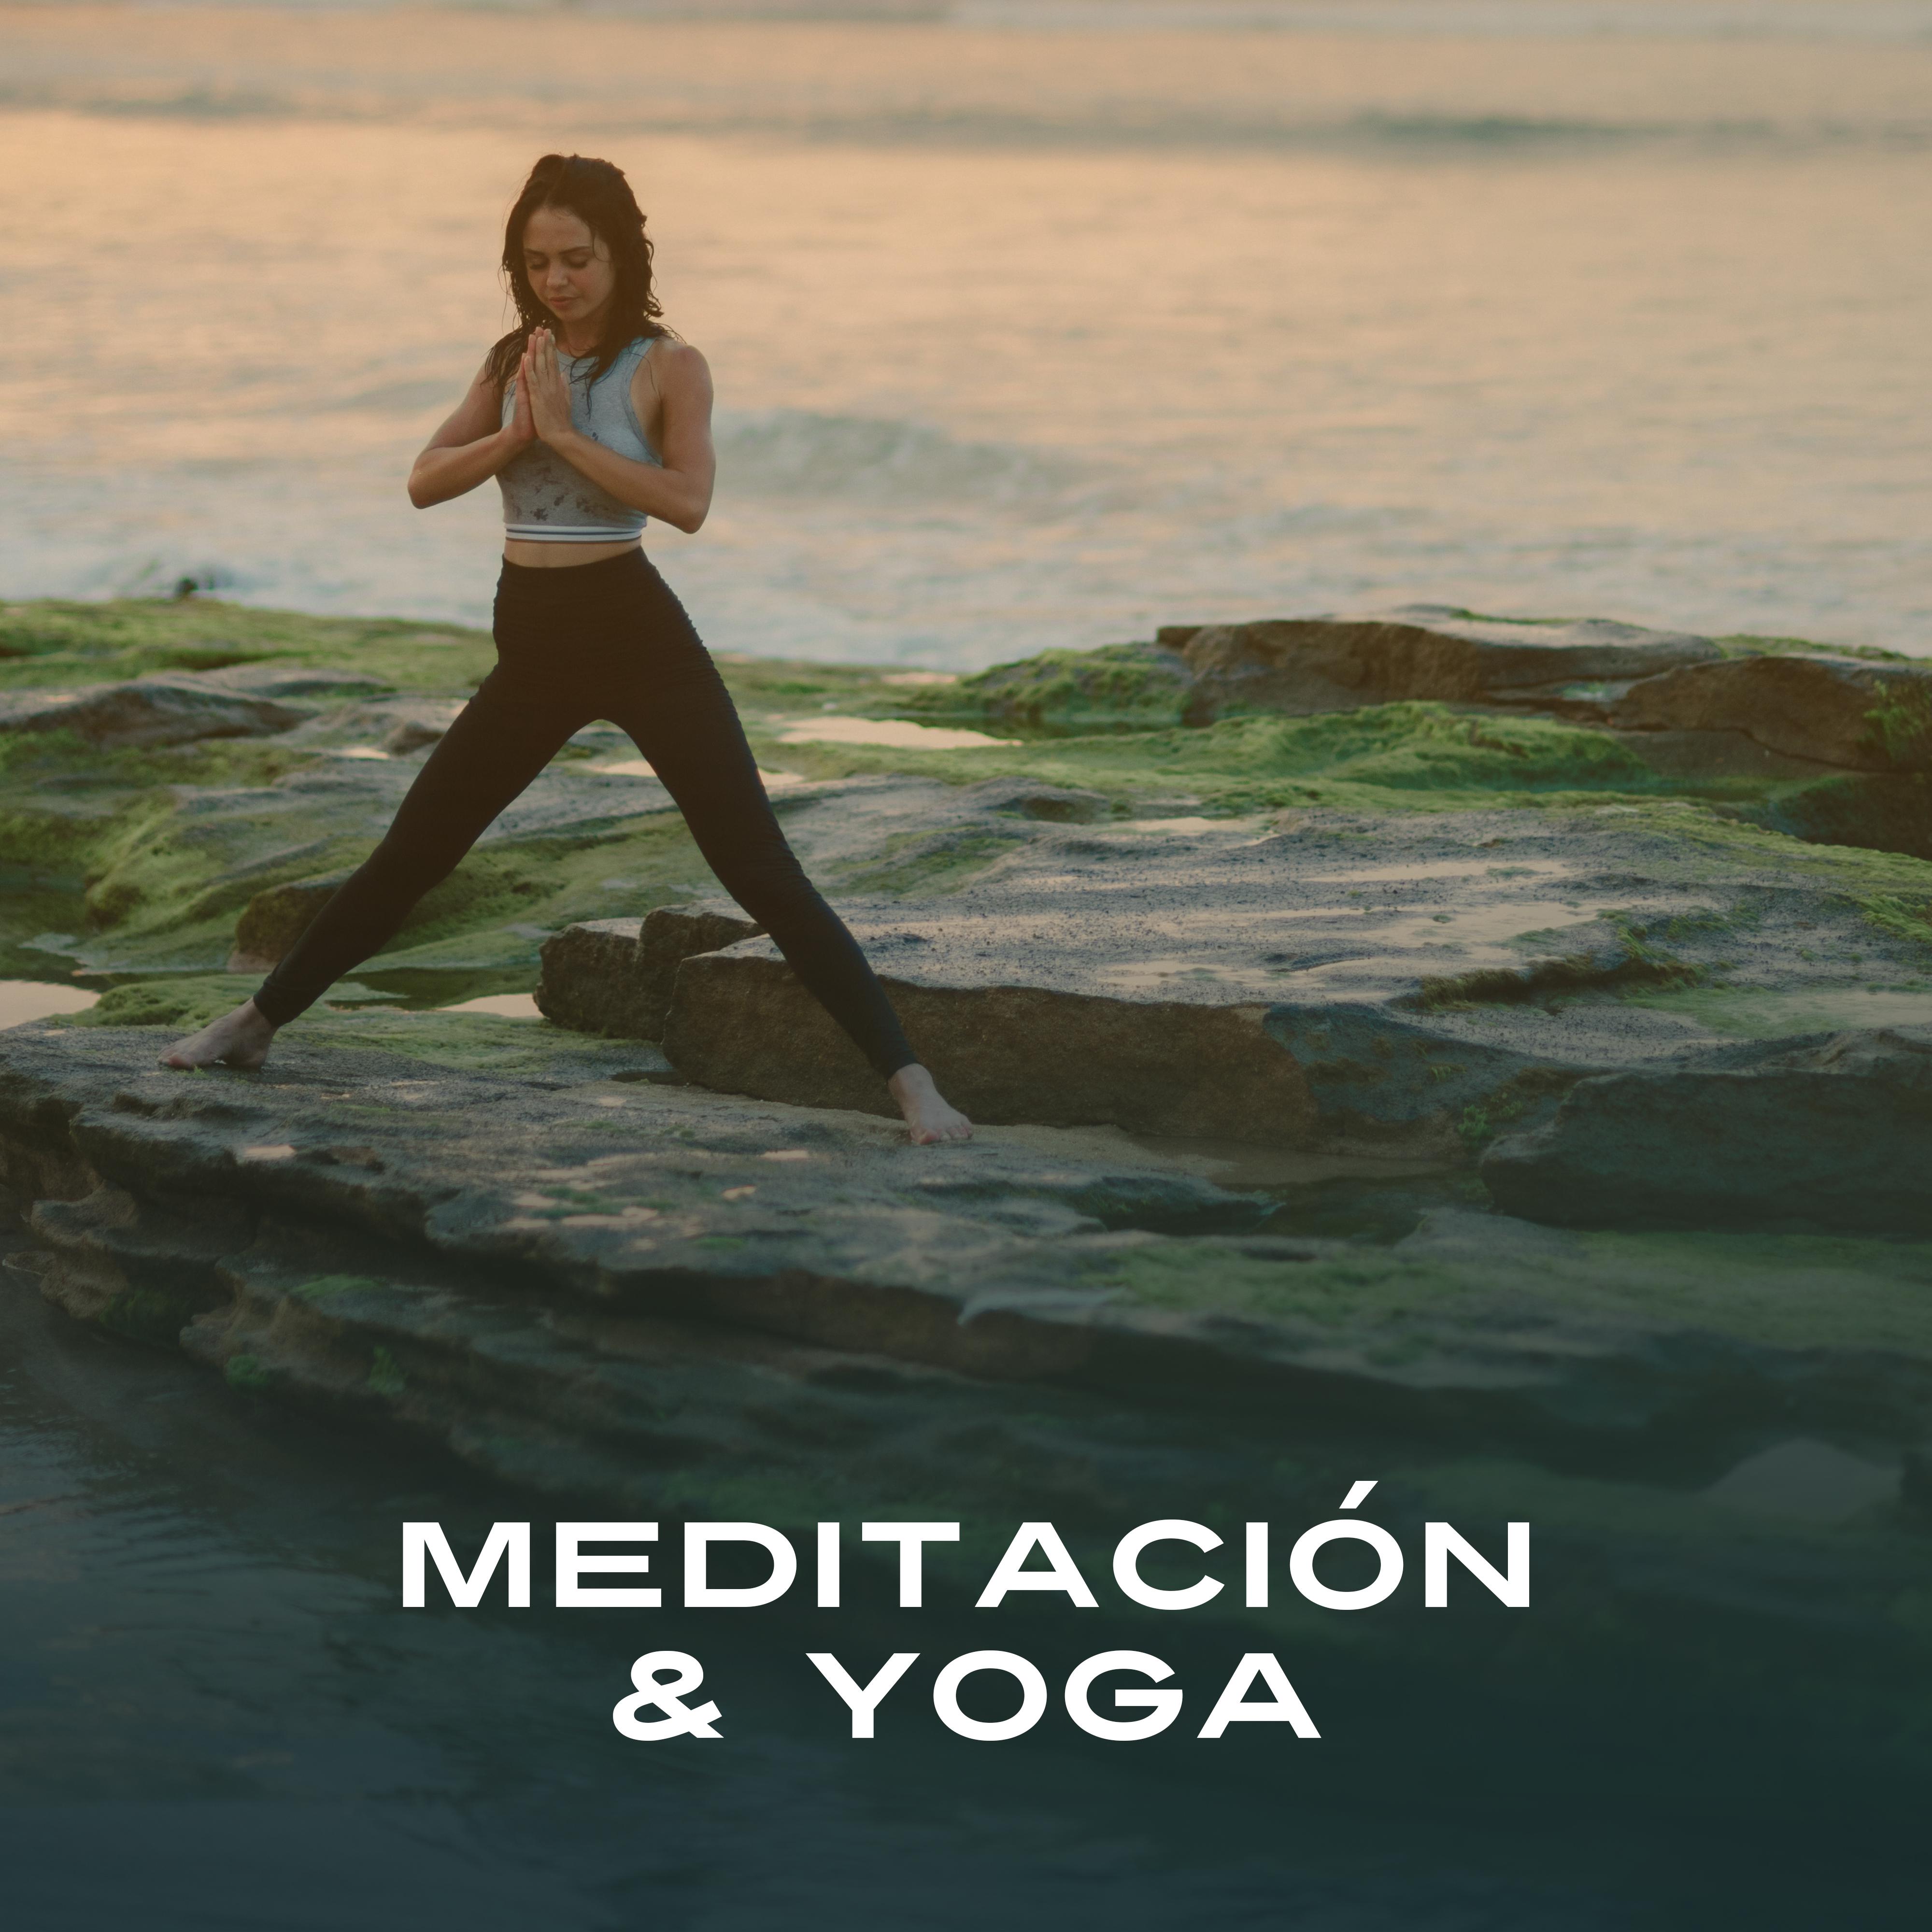 Meditación & Yoga – Zen, Mantra, La Naturaleza Suena para Relajarse, Meditación Profunda, New Age, Mente Clara